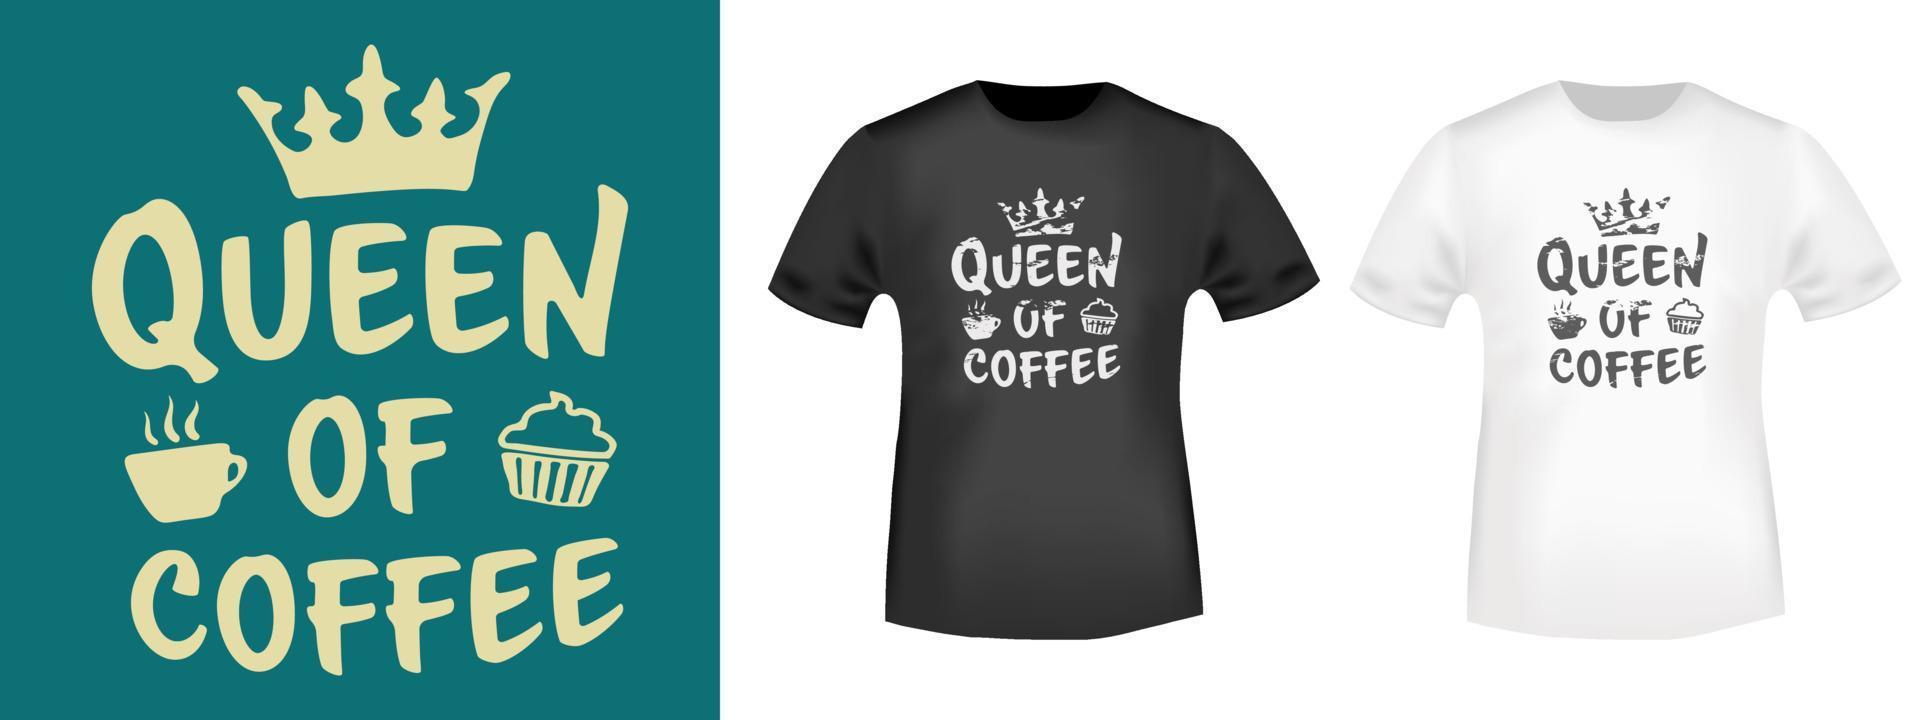 queen of coffee typografidesign för t-shirtstämplar, t-shirts, applikationer, märken, etikettkläder eller andra tryckprodukter. vektor illustration.